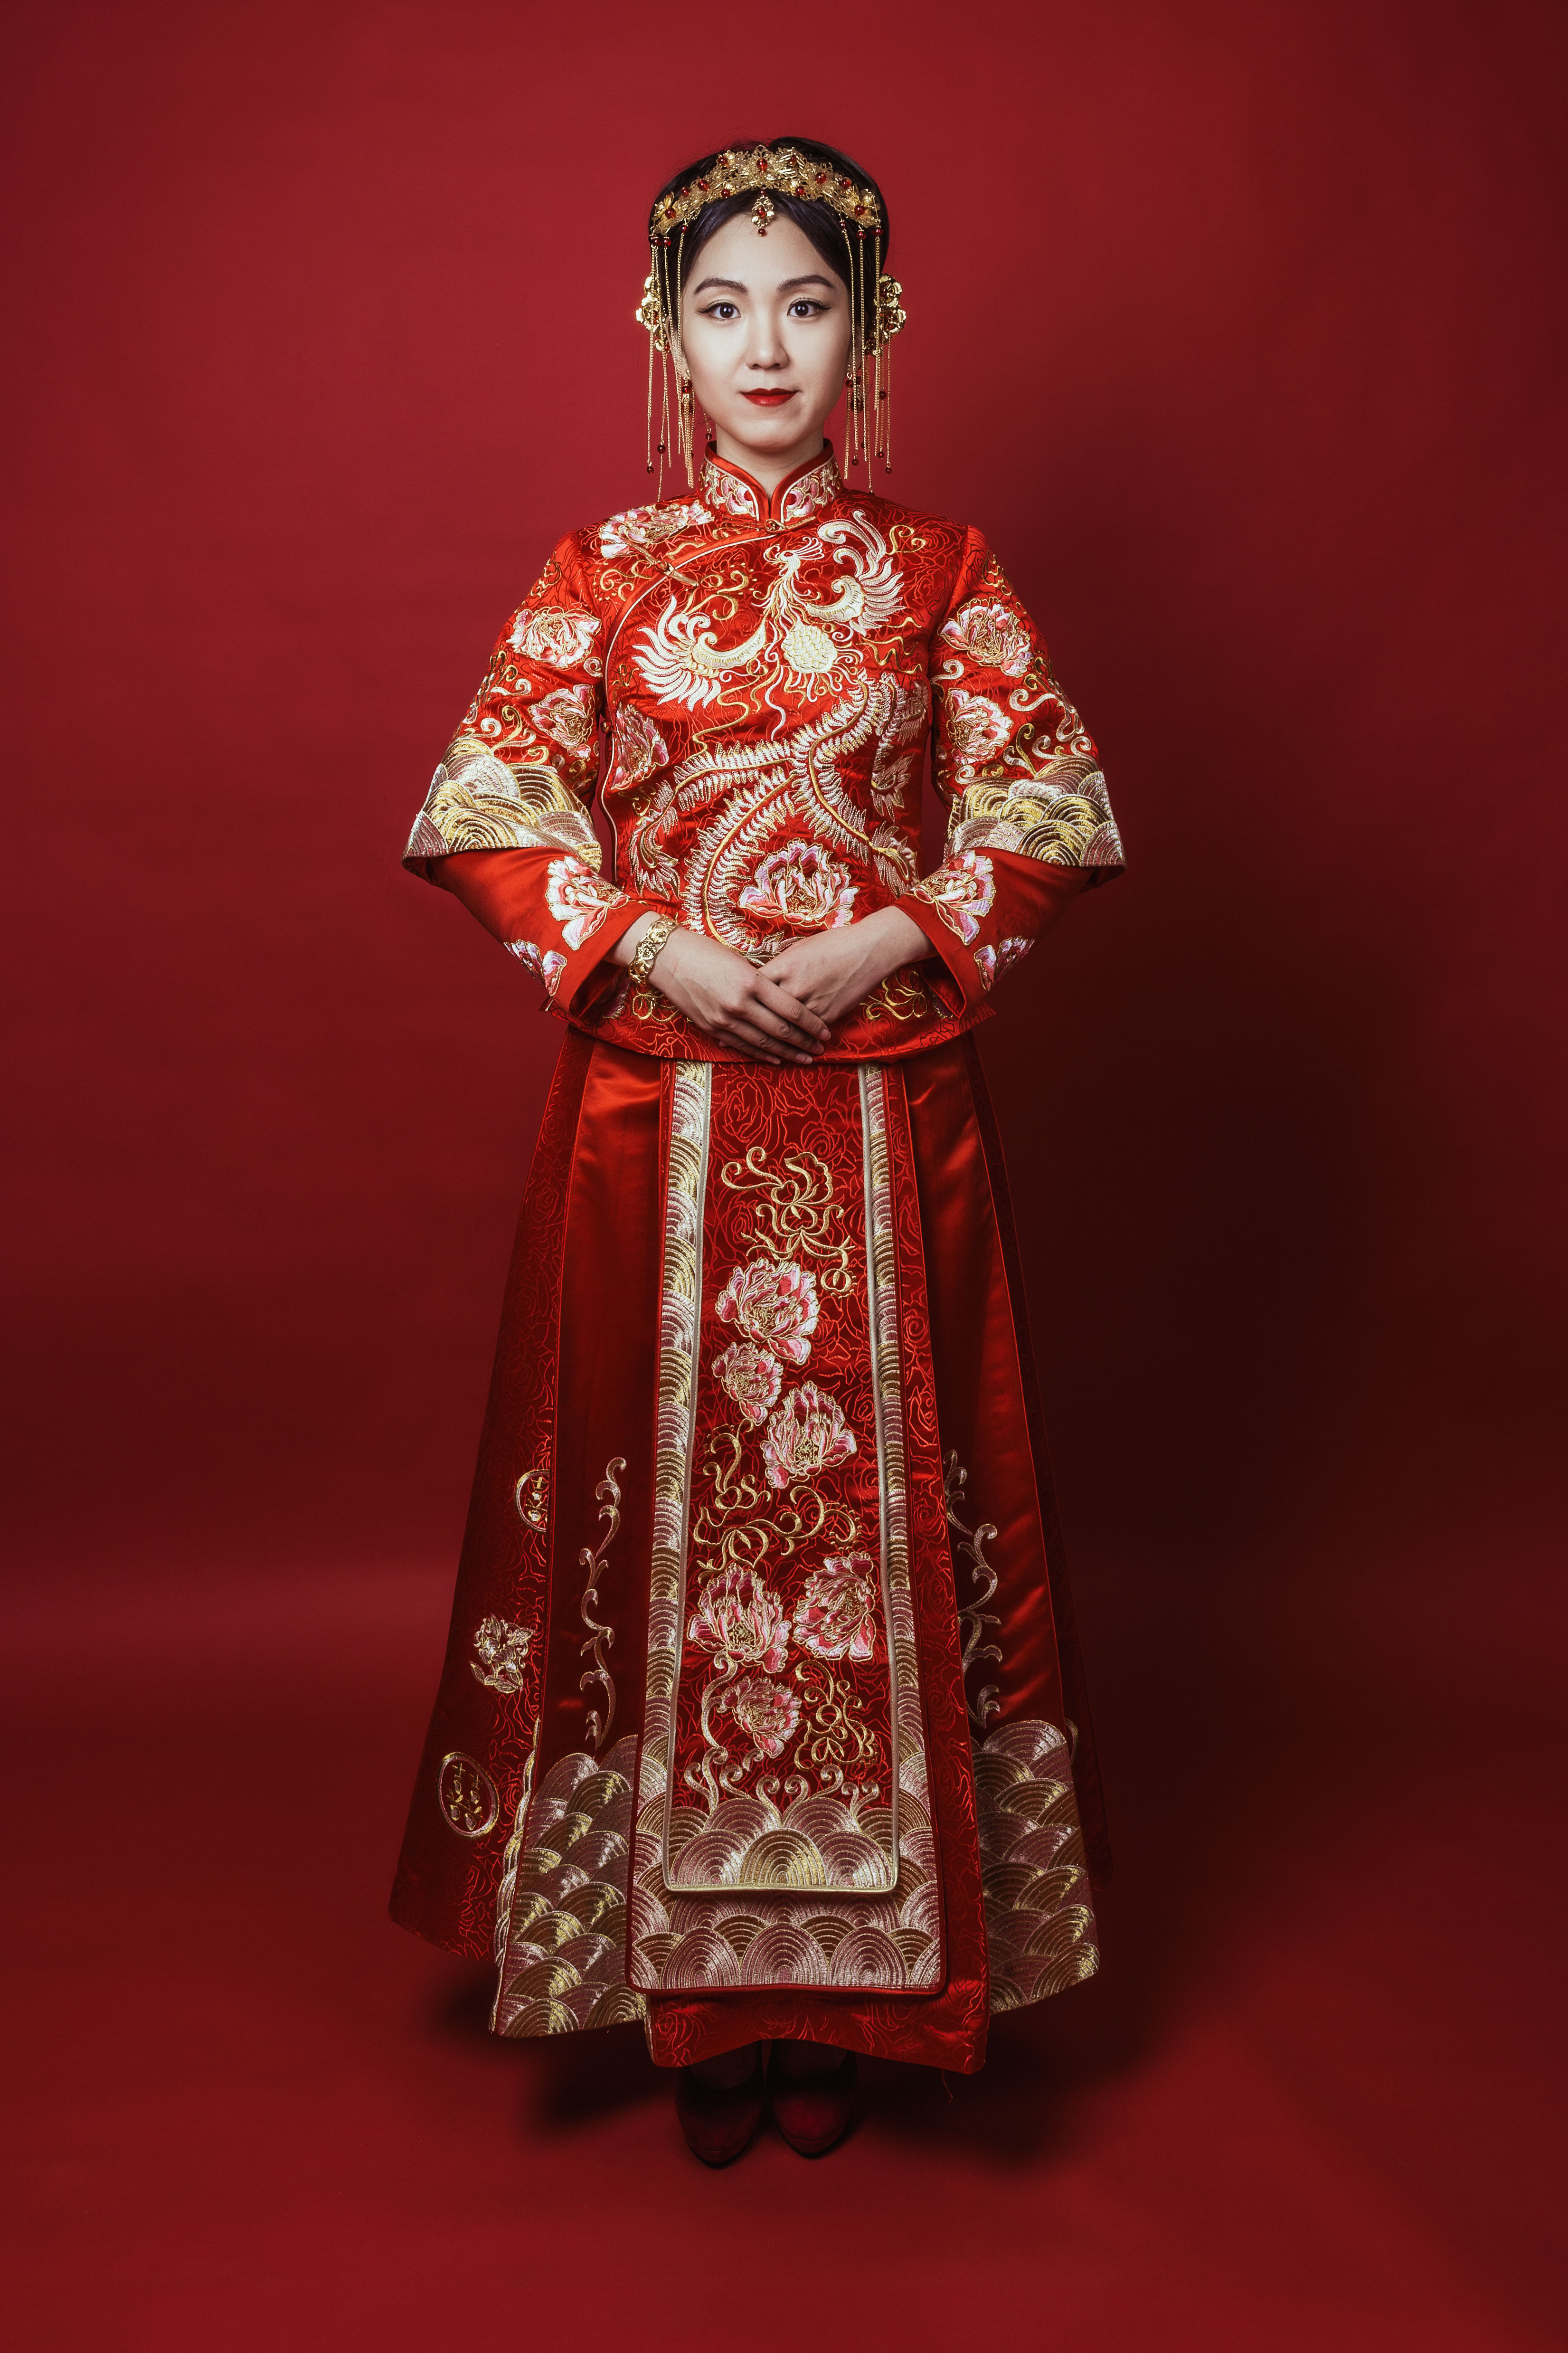 中式婚礼新娘礼服穿着讲究